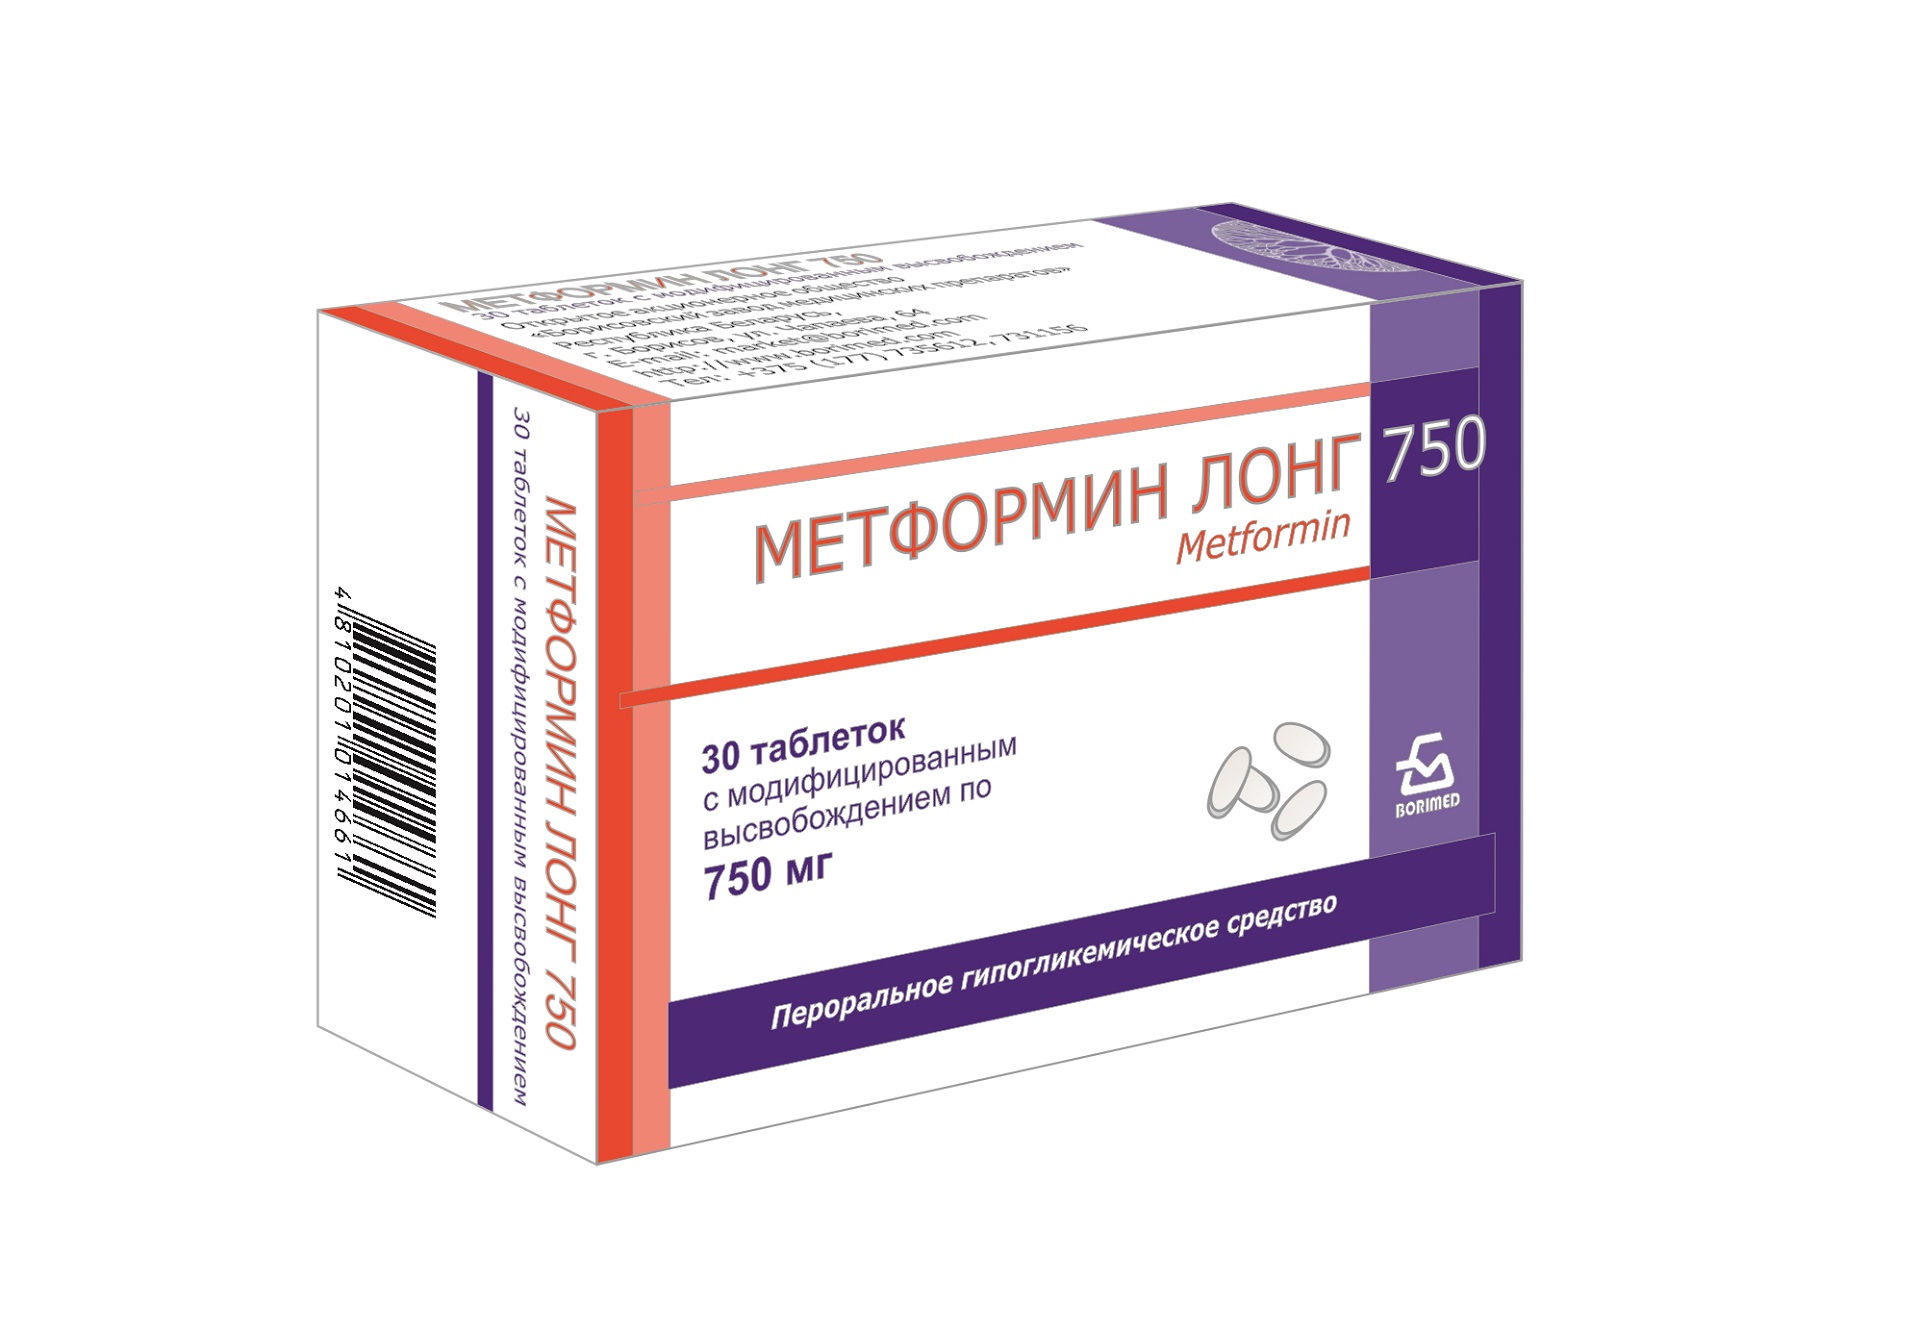 Метформин Лонг 750 – расширение линейки препаратов метформина с модифицированным высвобождением